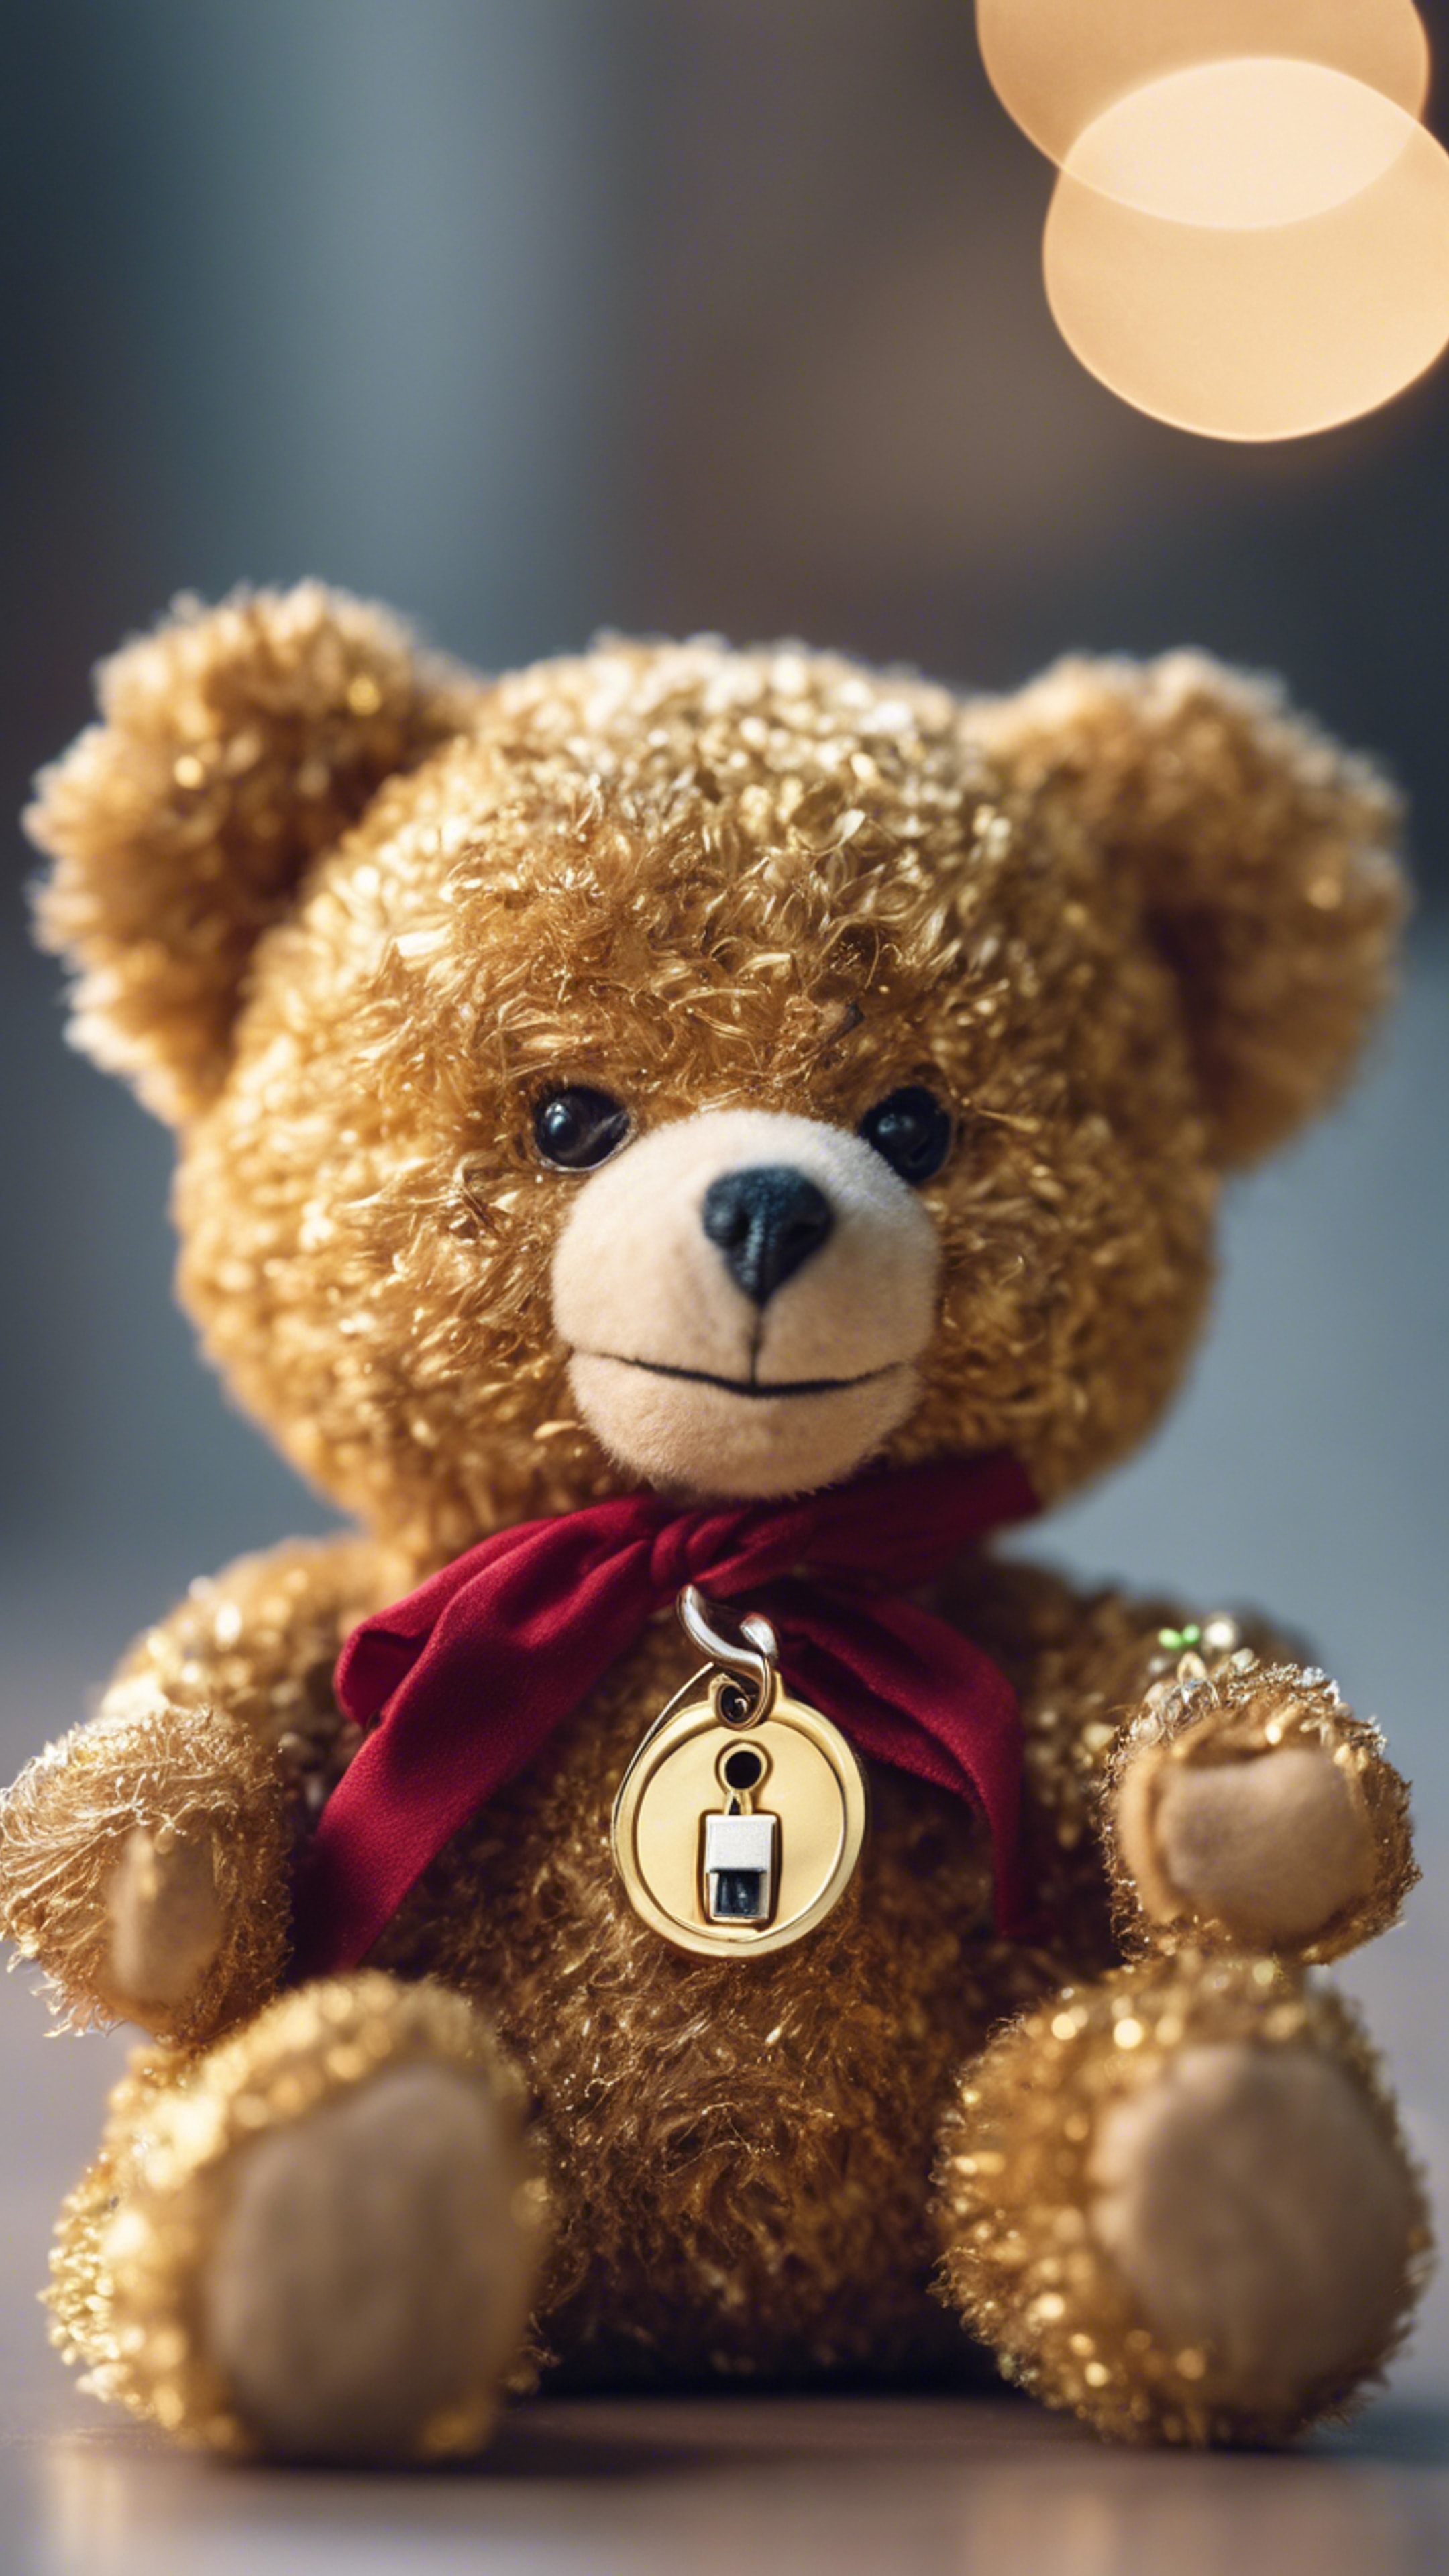 A teddy bear holding a shiny golden key. Kertas dinding[5d2fb50236af4c678fb0]